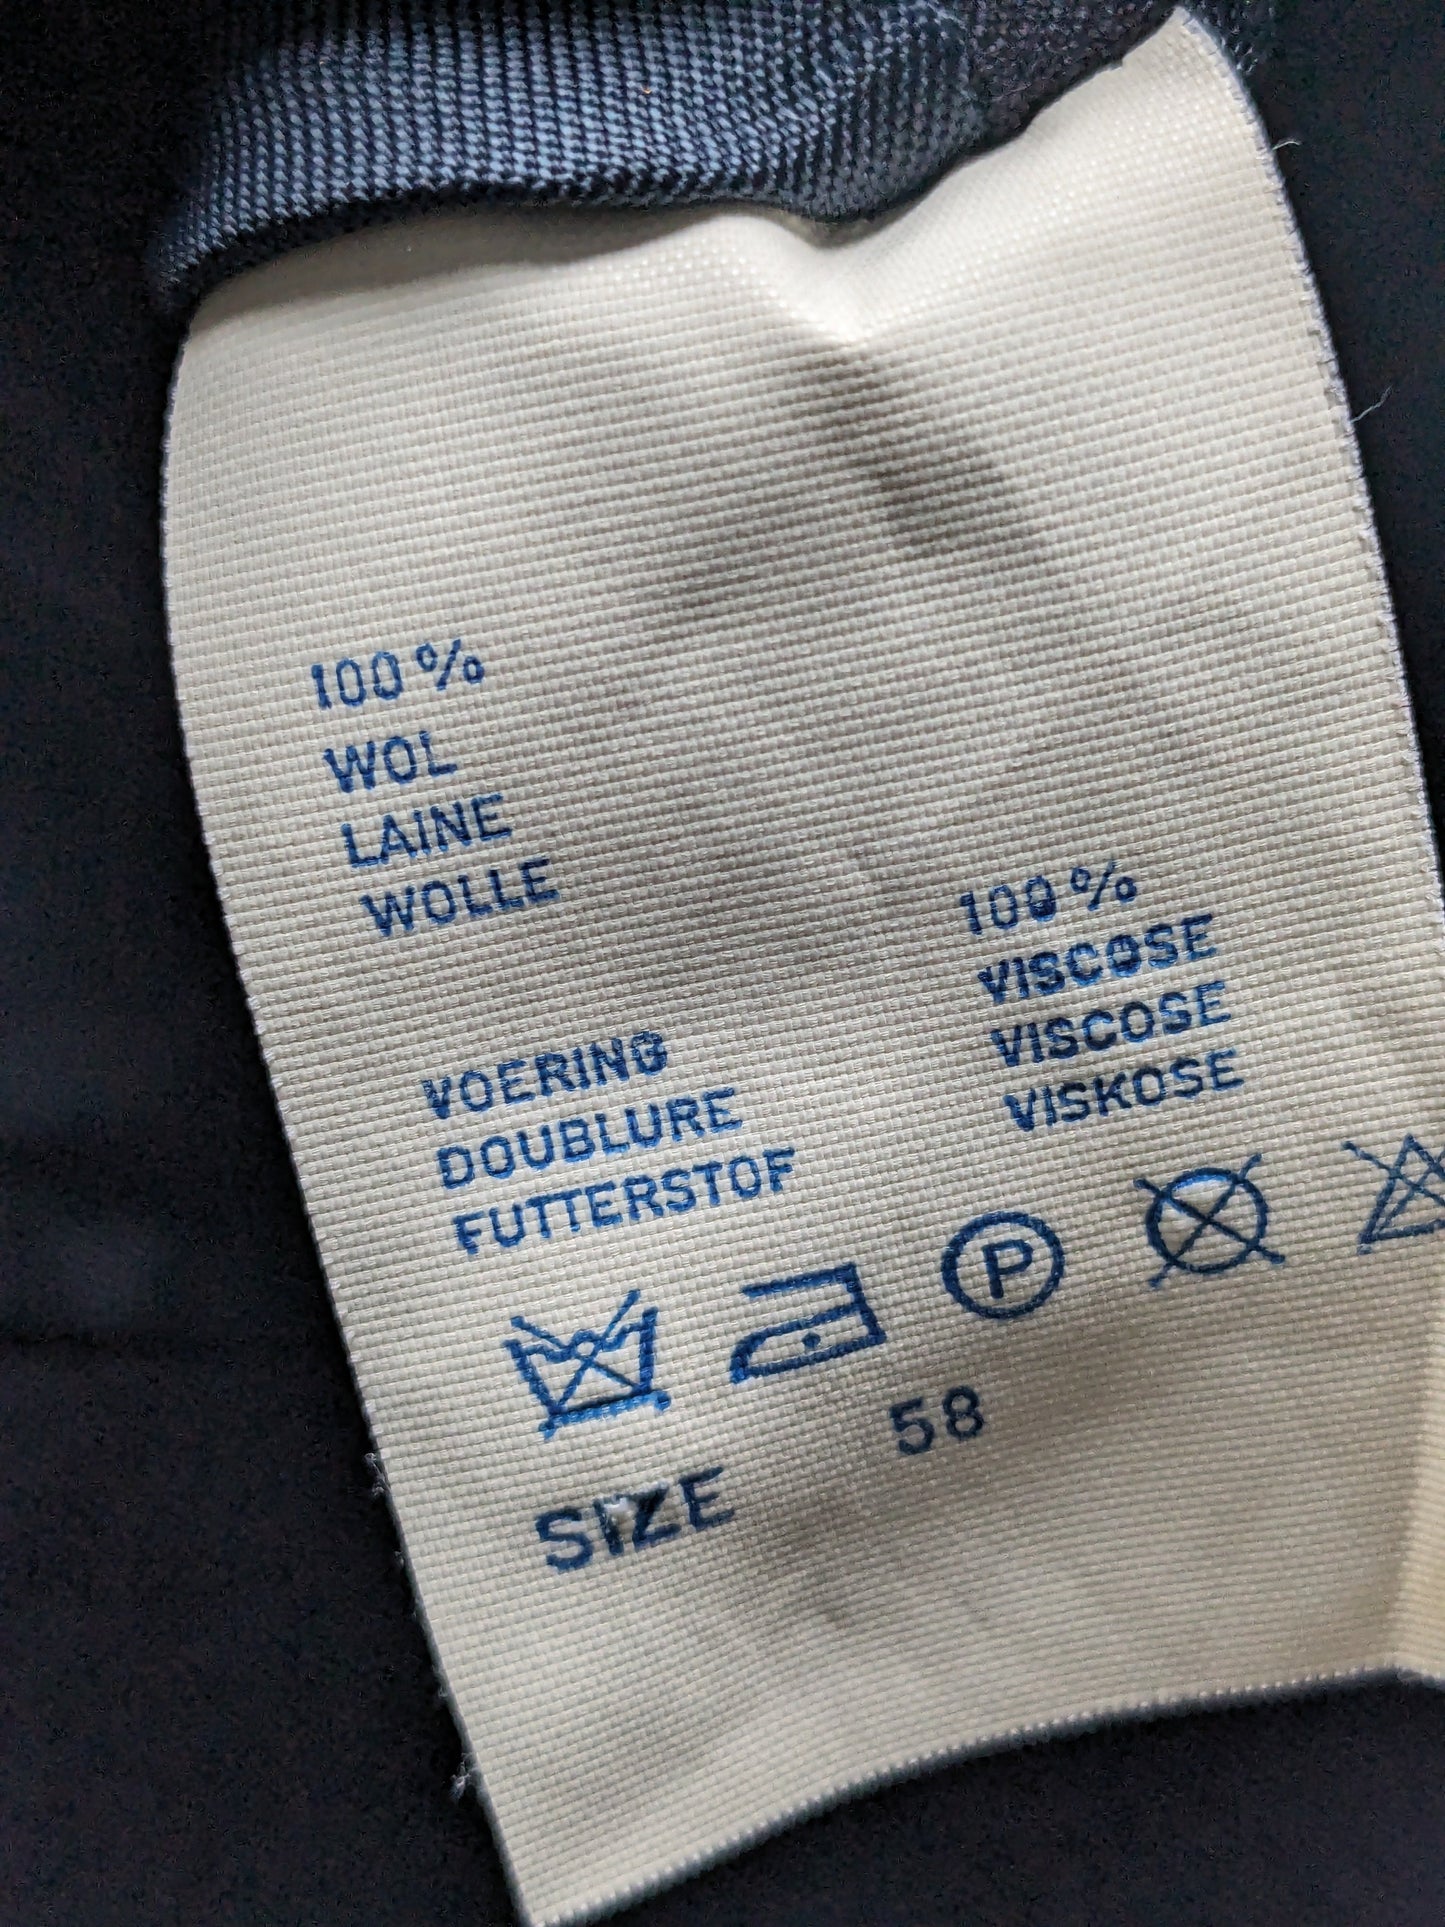 Veste en laine scapa vintage avec de beaux boutons. Couleur bleu foncé. Taille 58 / XL.